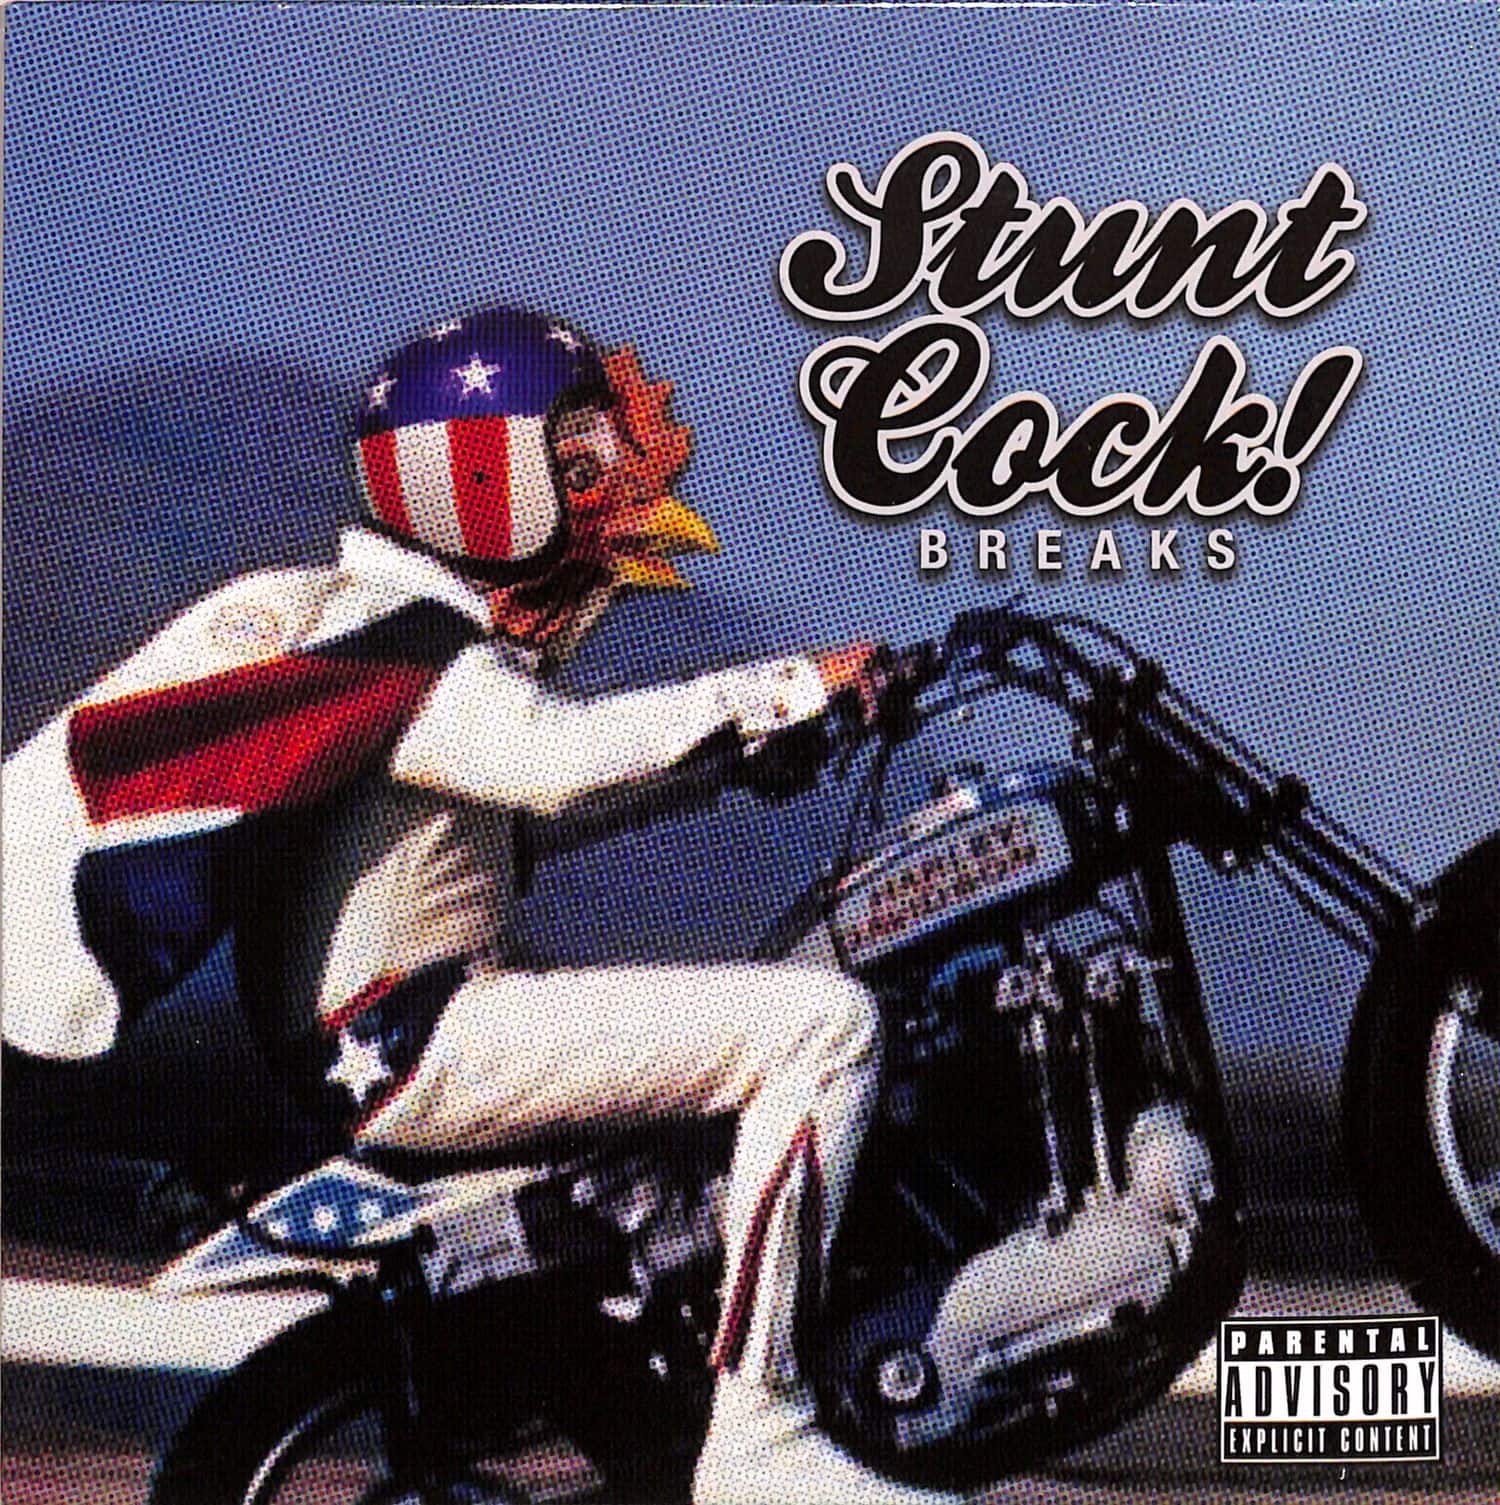 Jimmy Cluck - STUNT COCK BREAKS 